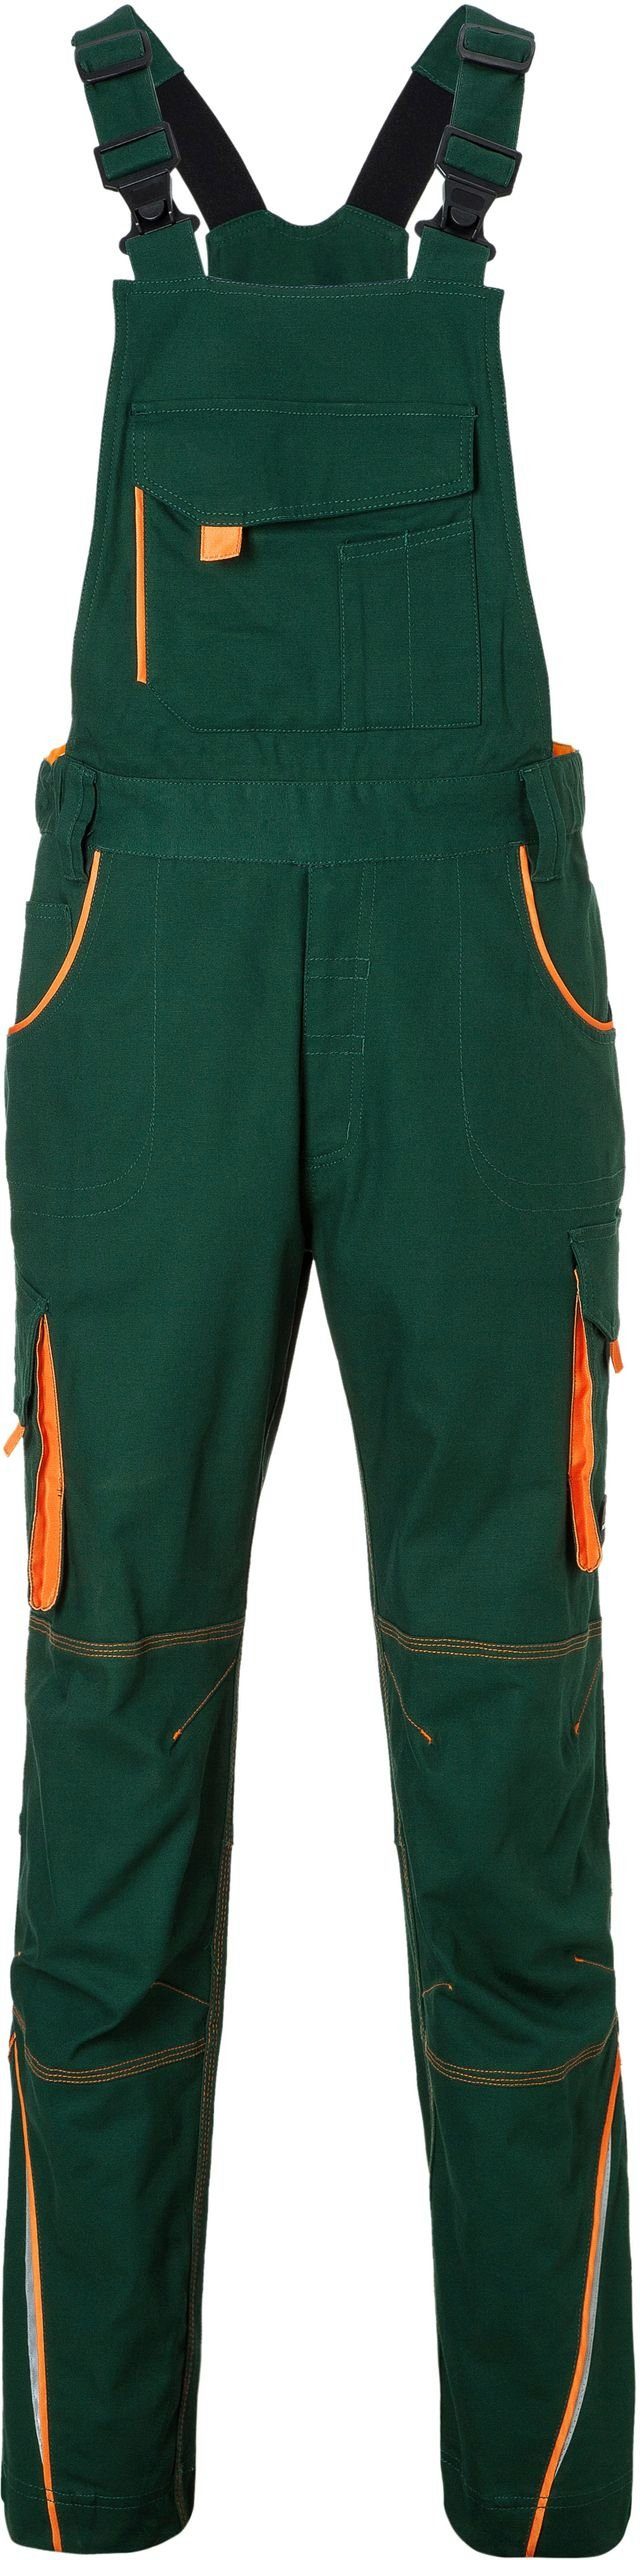 James & Nicholson Arbeitslatzhose Latzhose Workwear FaS50848 dark green/orange